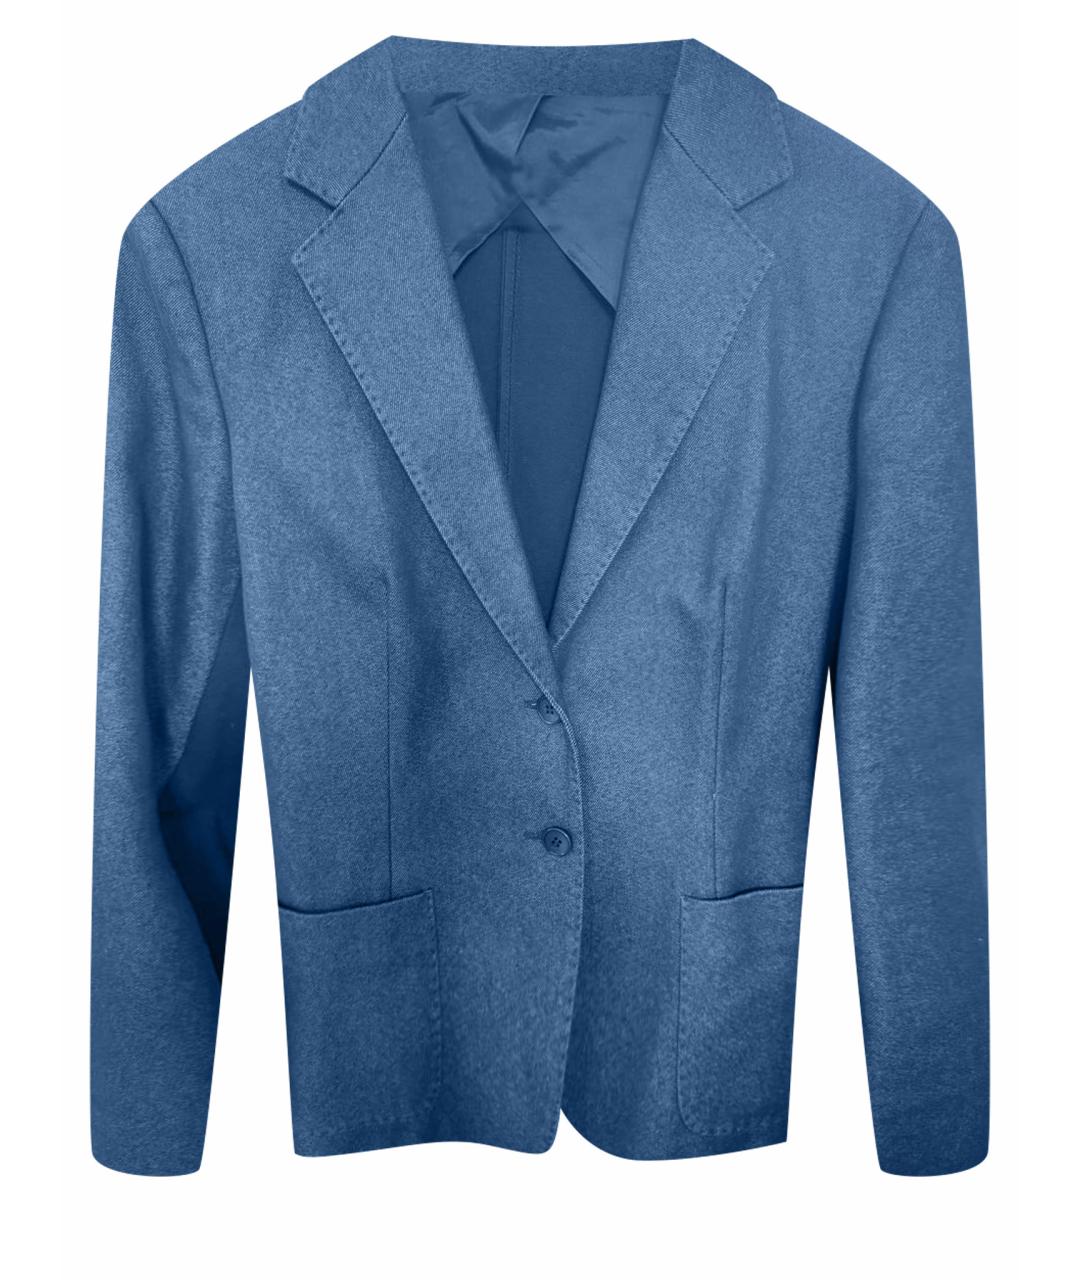 'S MAX MARA Темно-синий хлопковый жакет/пиджак, фото 1